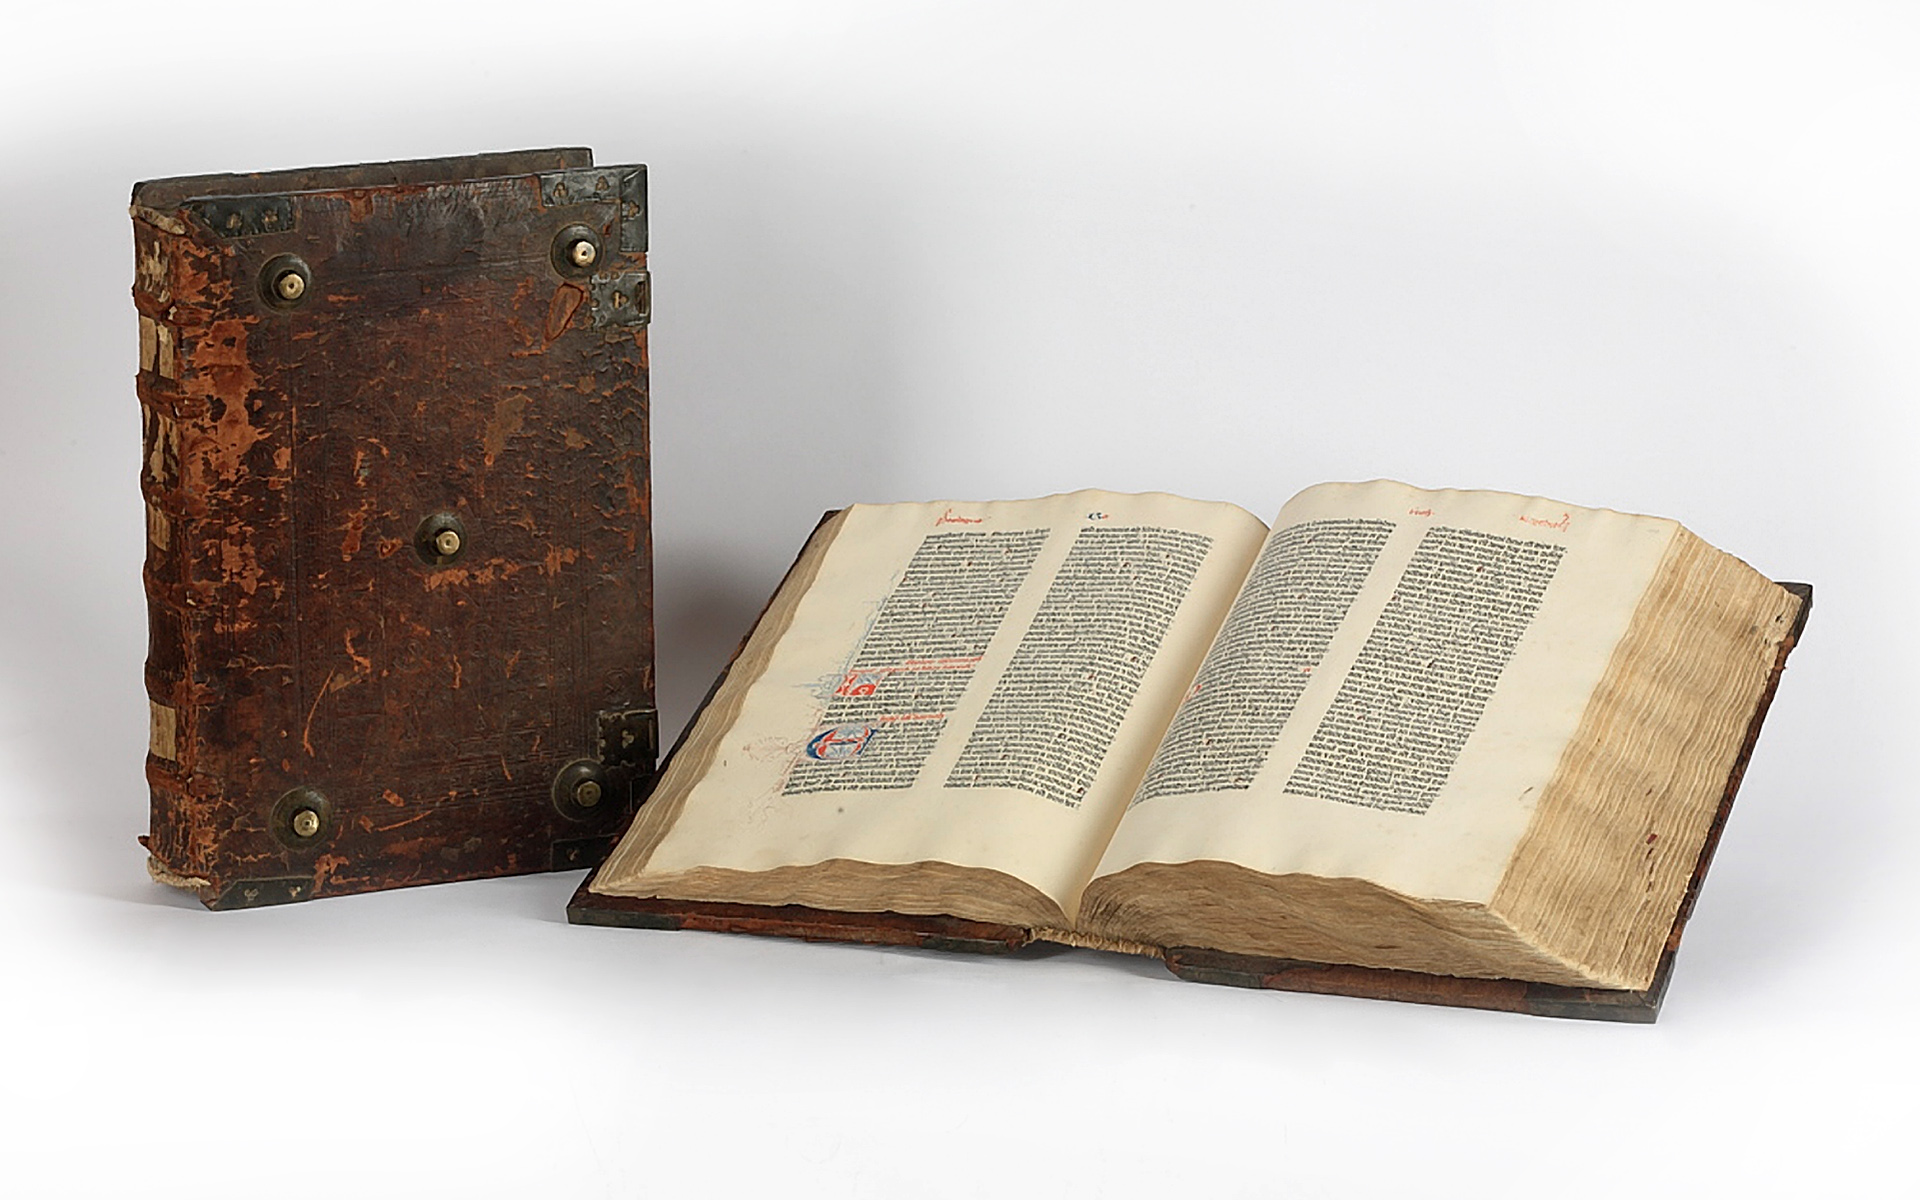 Biblia Gutenberga, Pelplin - fotografia, muzea, obiekty muzealne